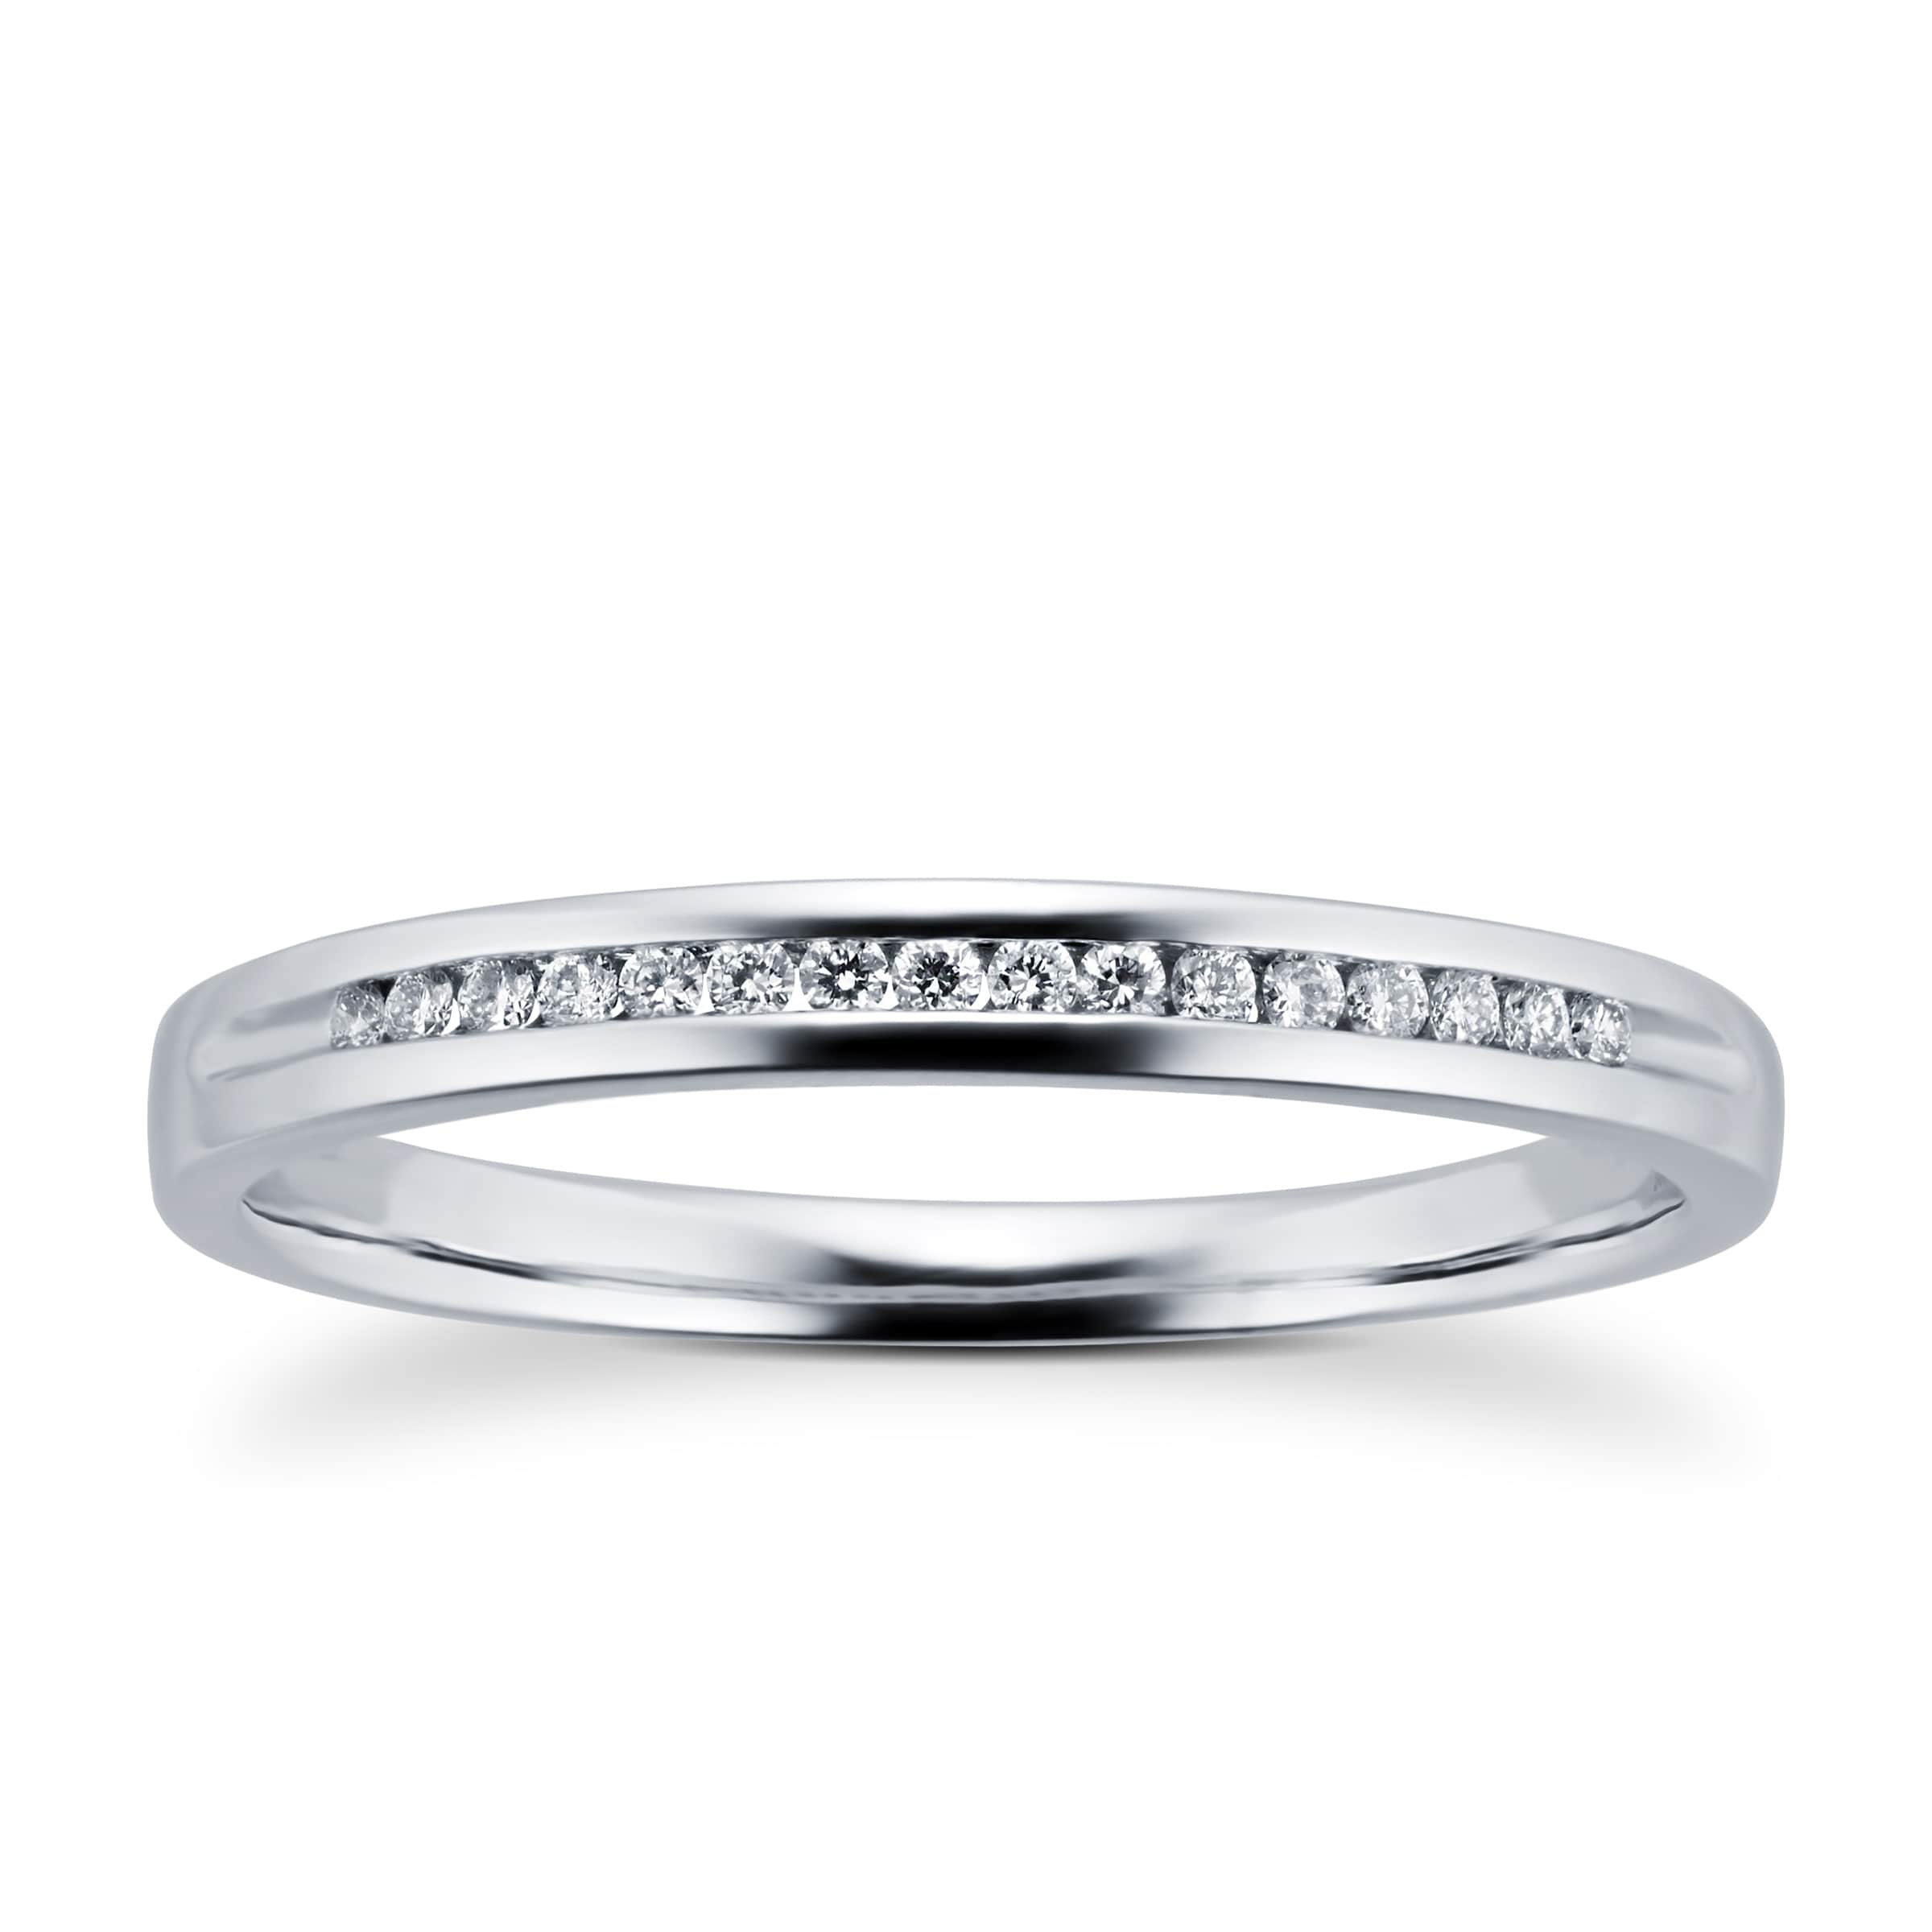 Ladies Diamond Set 2mm Wedding Ring In 18 Carat White Gold - Ring Size N